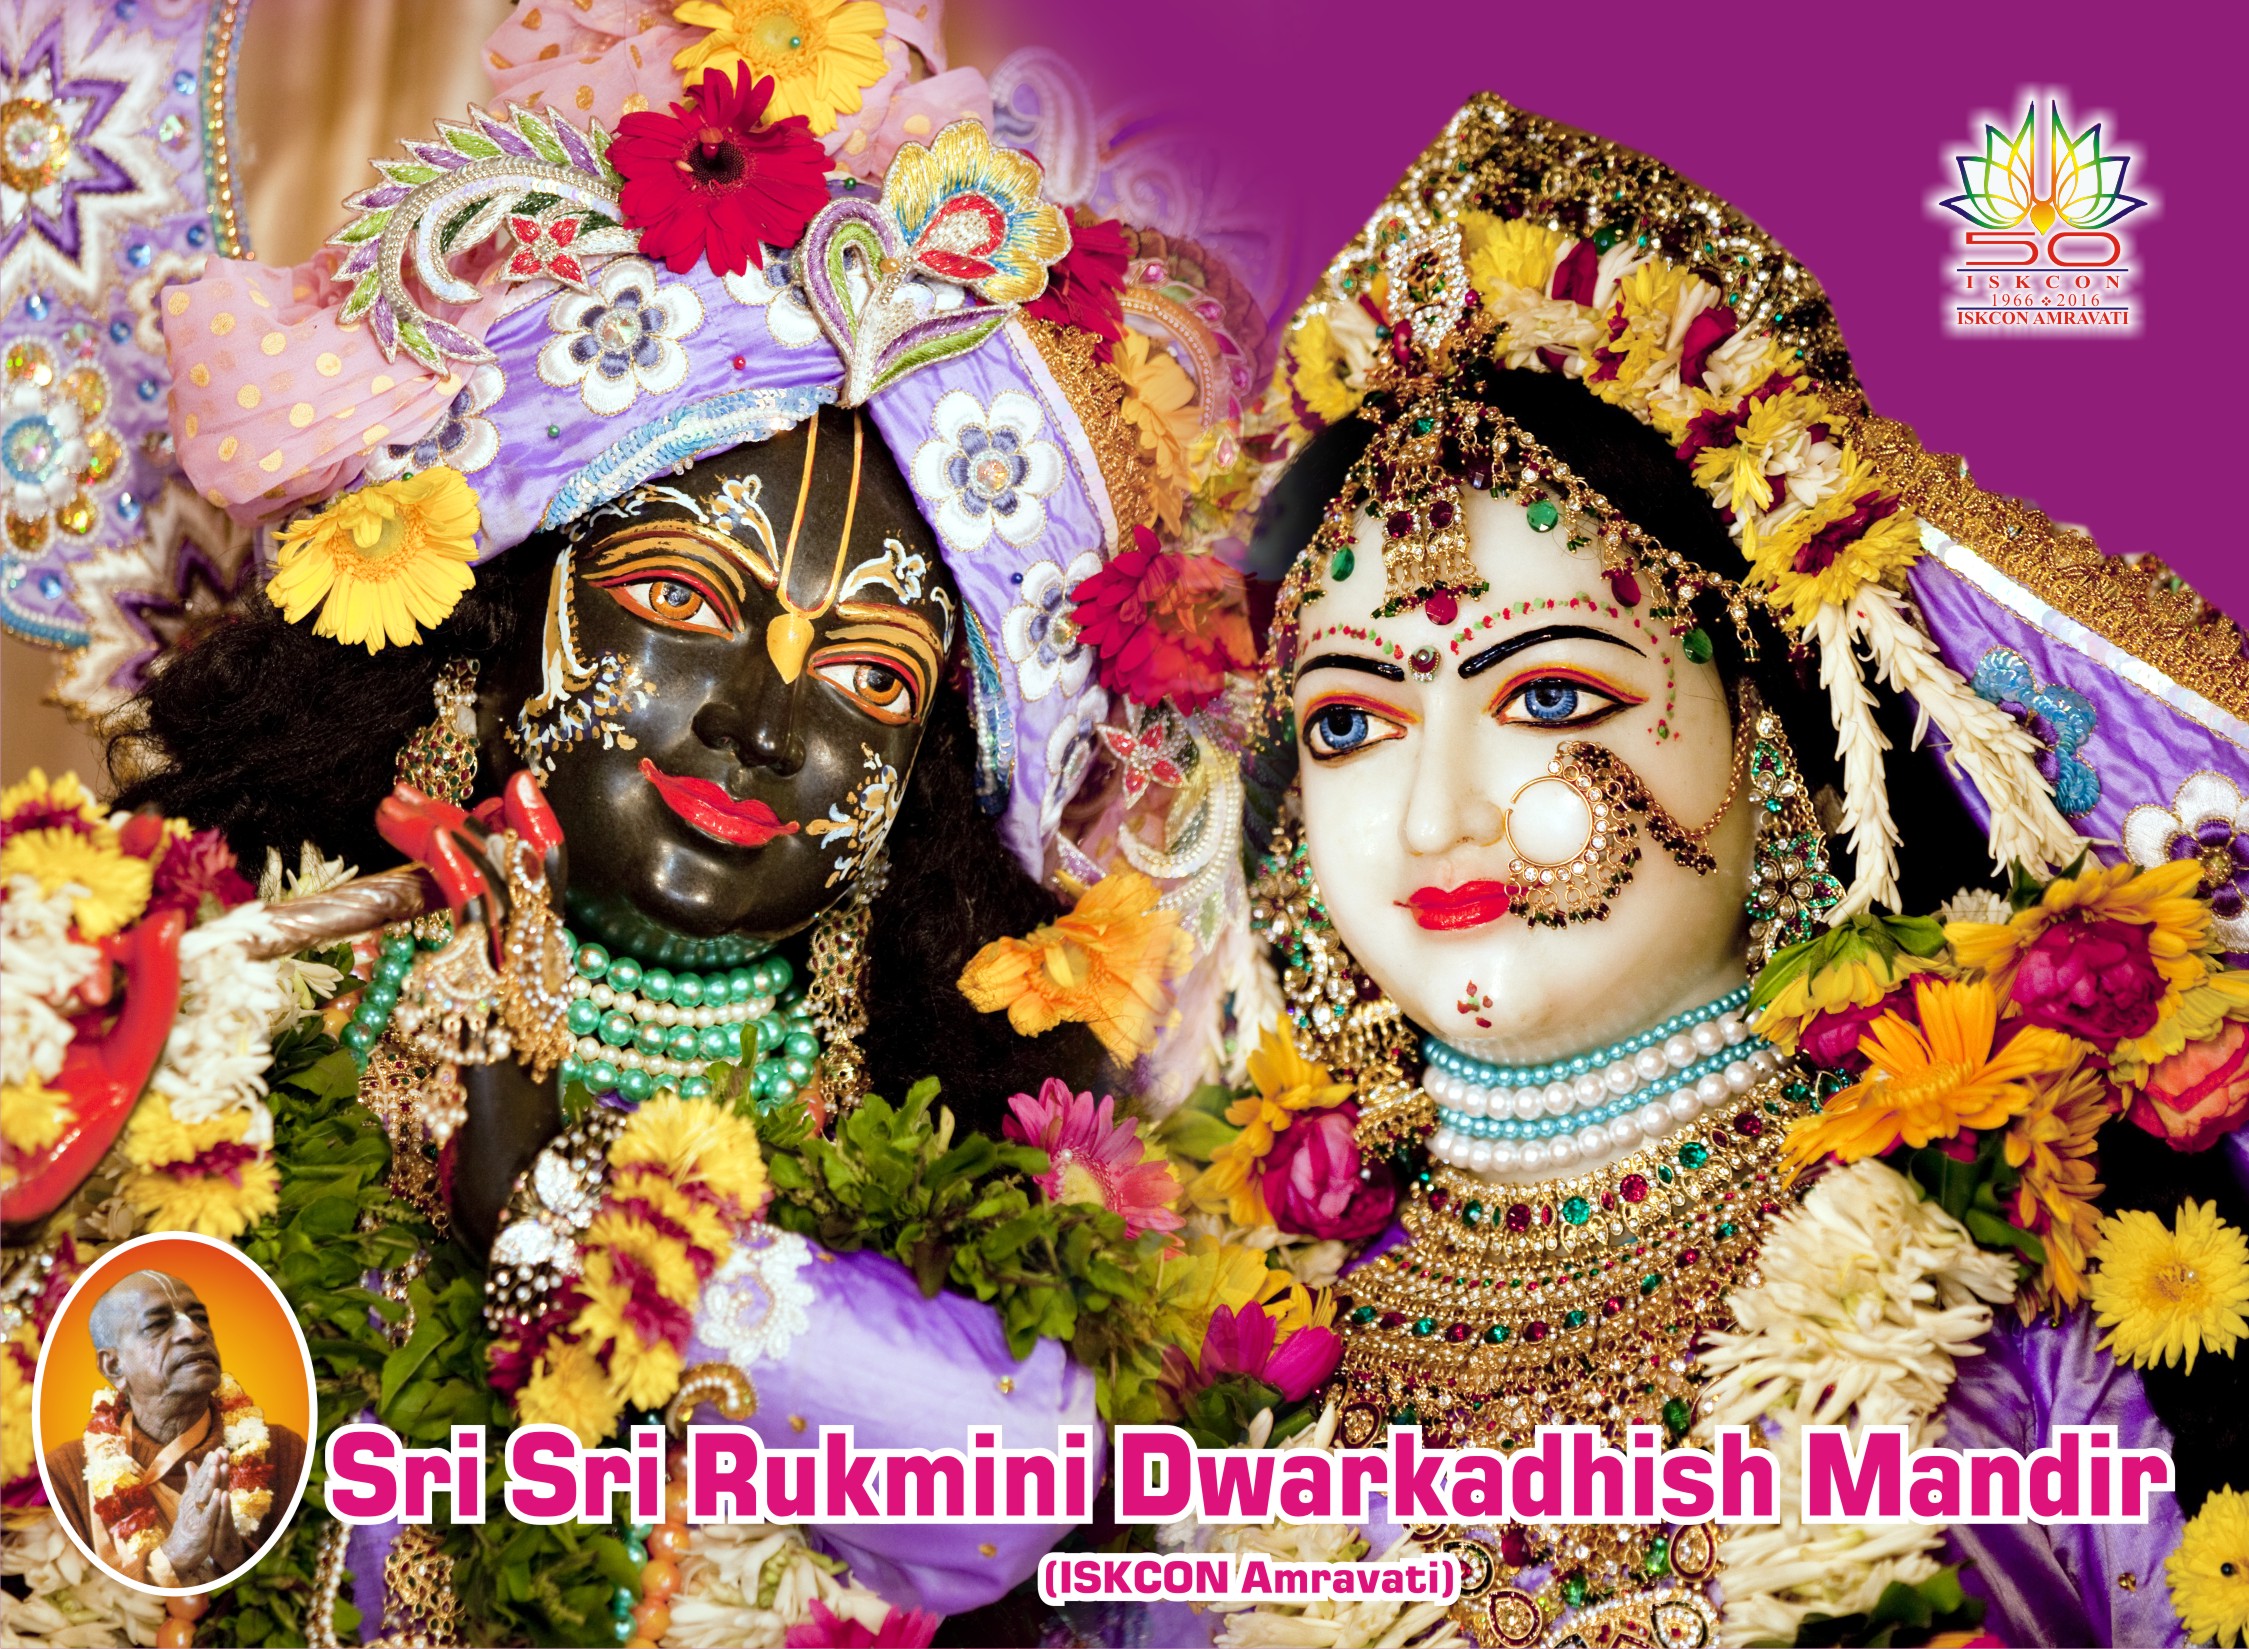 Iskcon Amravati Sri Sri Rukmini Dwarkadhish Mandir